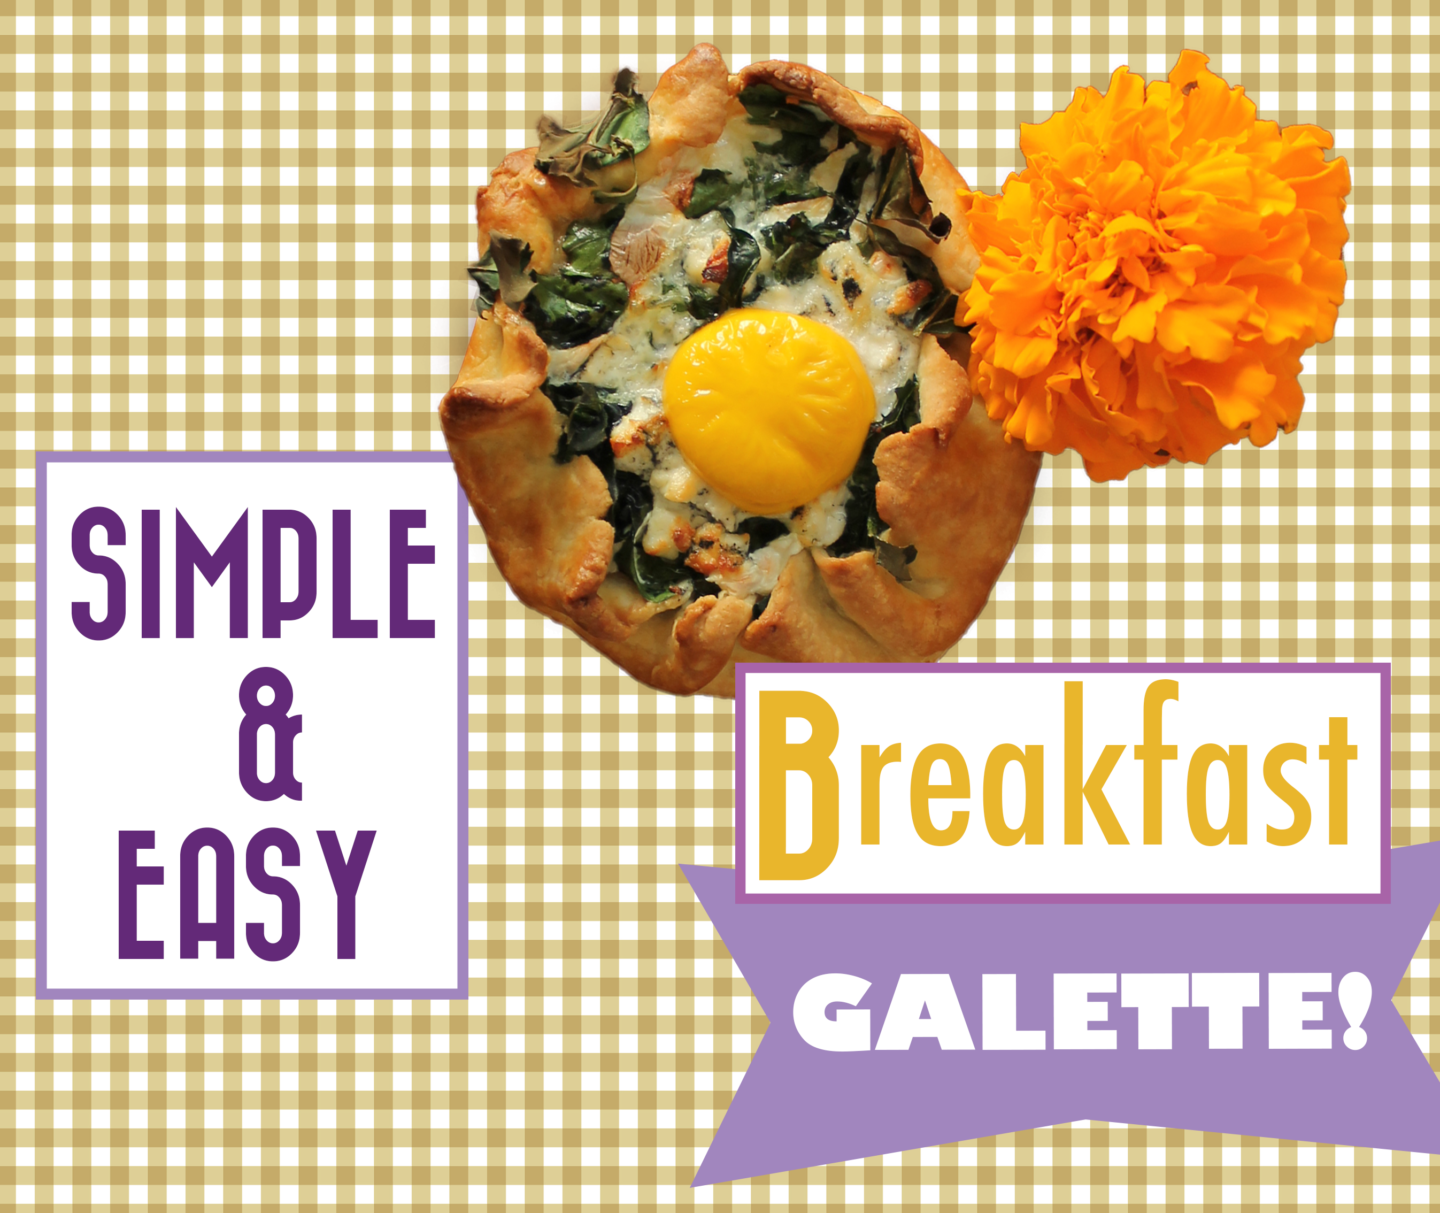 Breakfast Galette